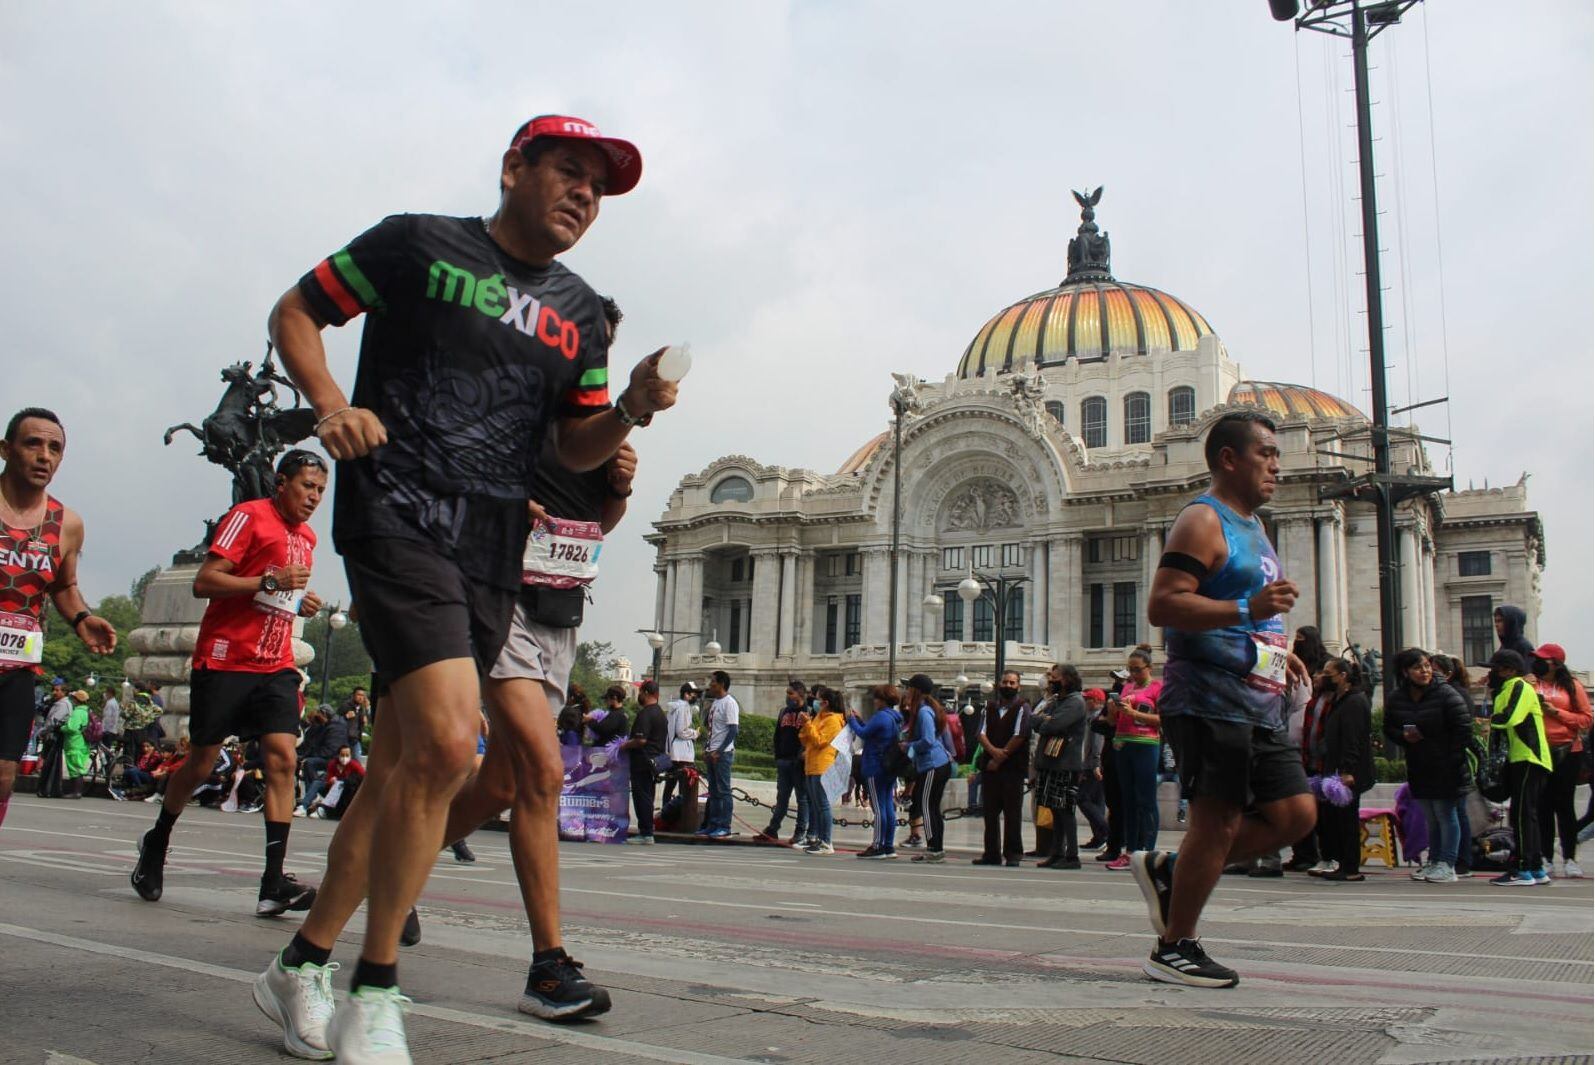 Maratón CDMX 2022 - maraton de la ciudad de méxico telcel 2022 - maraton telcel cdmx 2022 - bebidas adulteradas maraton cdmx 2022